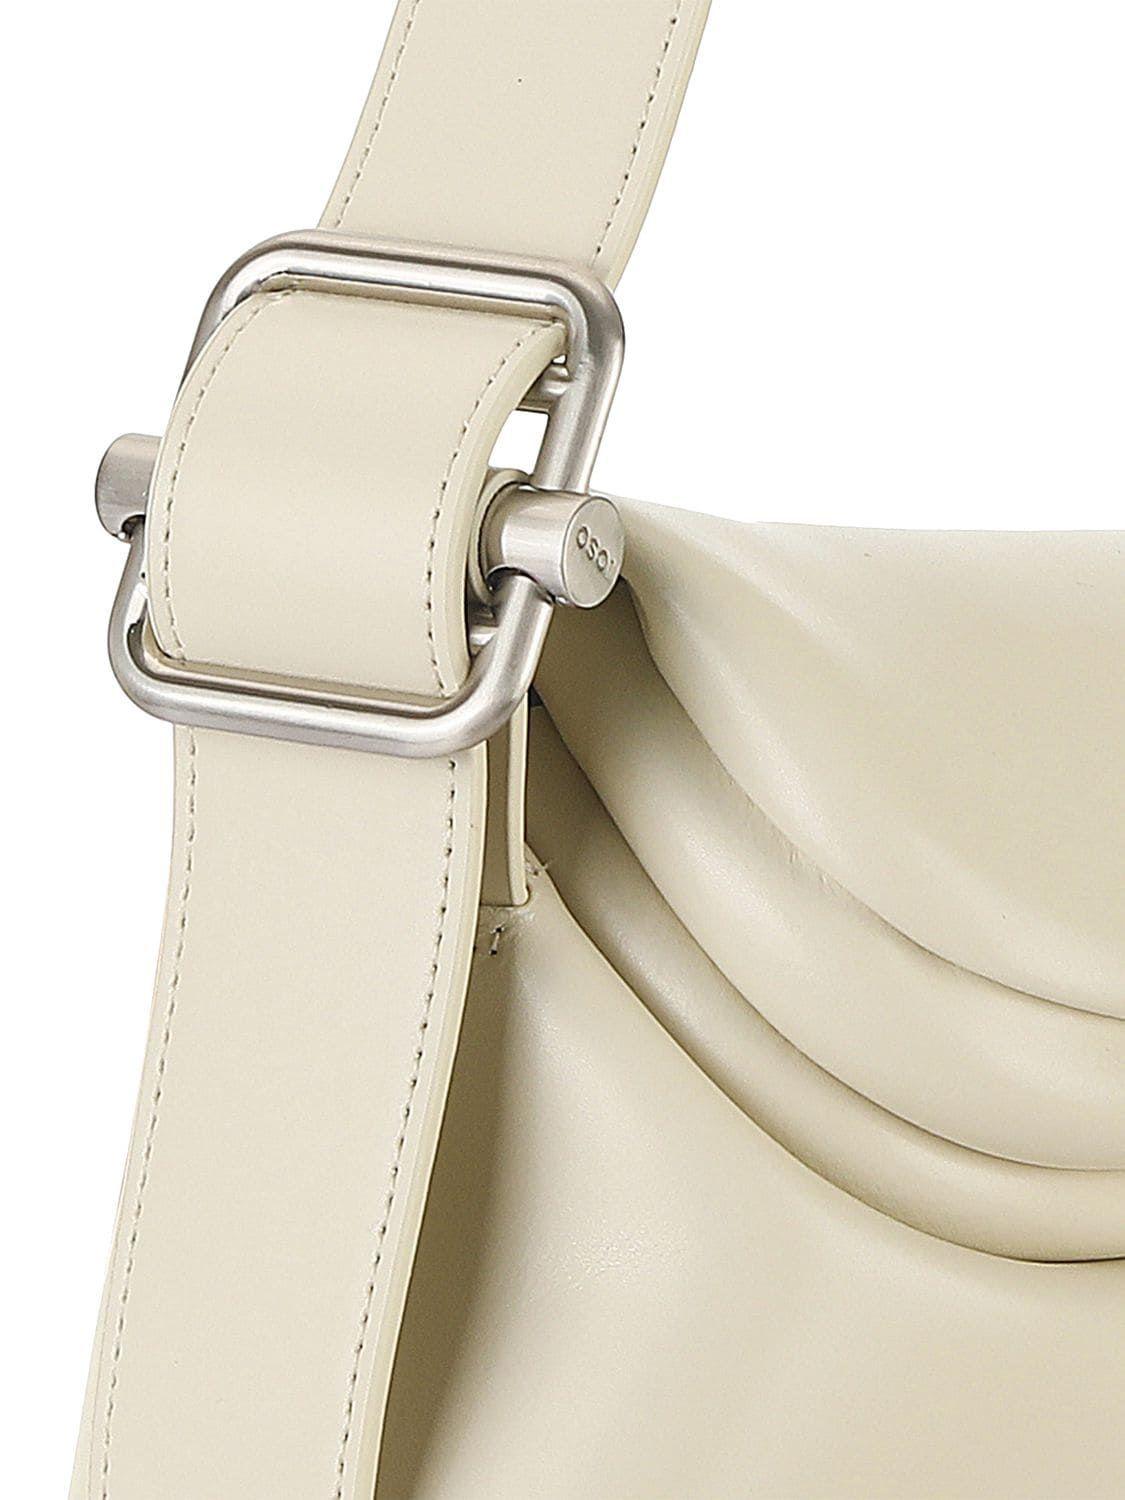 OSOI Folder Brot Leather Shoulder Bag in Natural | Lyst